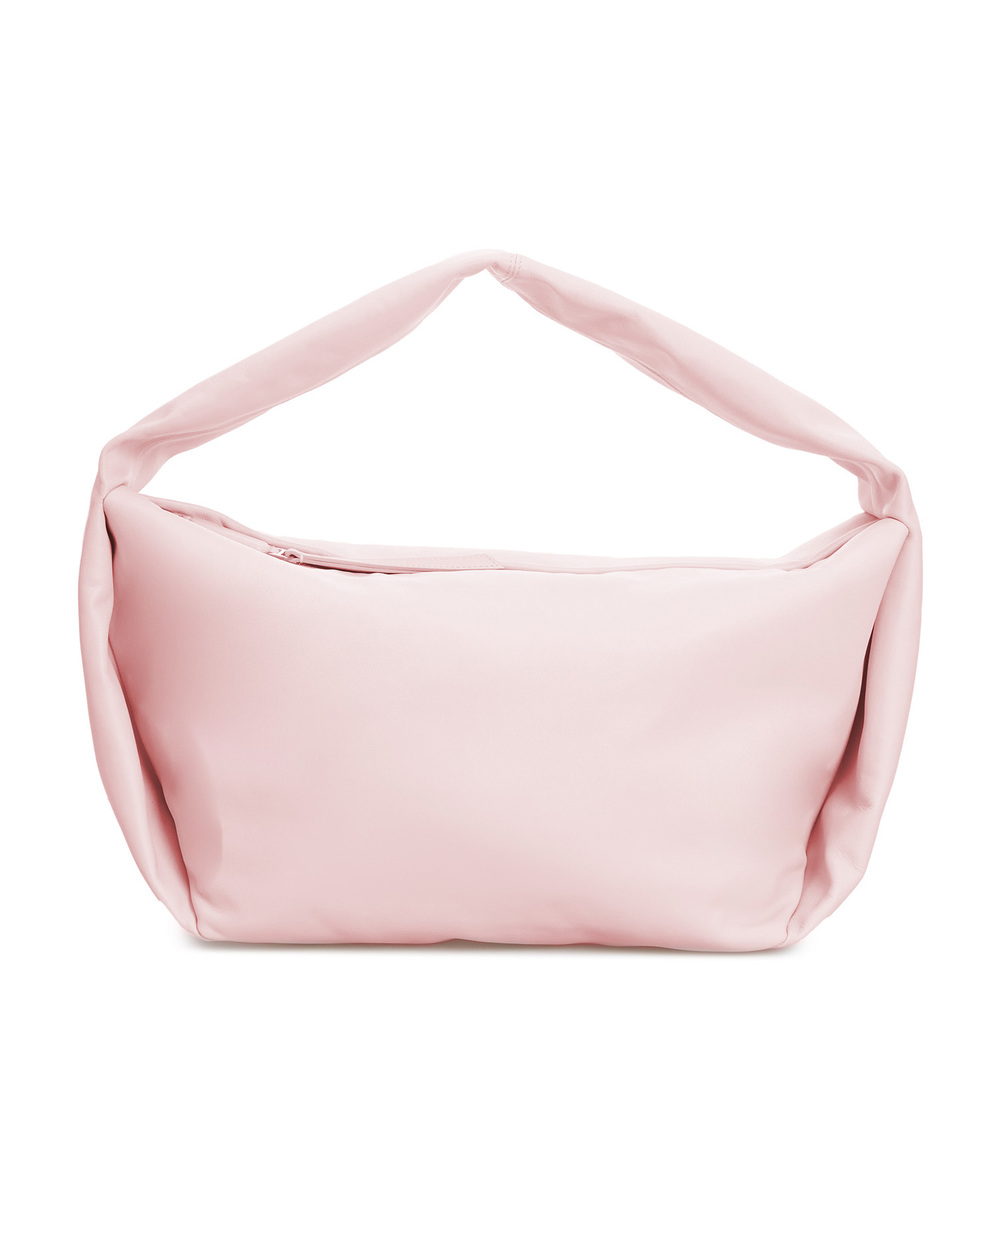 Кожаная сумка Soft Small Dolce&Gabbana BB2179-AW752, пудровый цвет • Купить в интернет-магазине Kameron